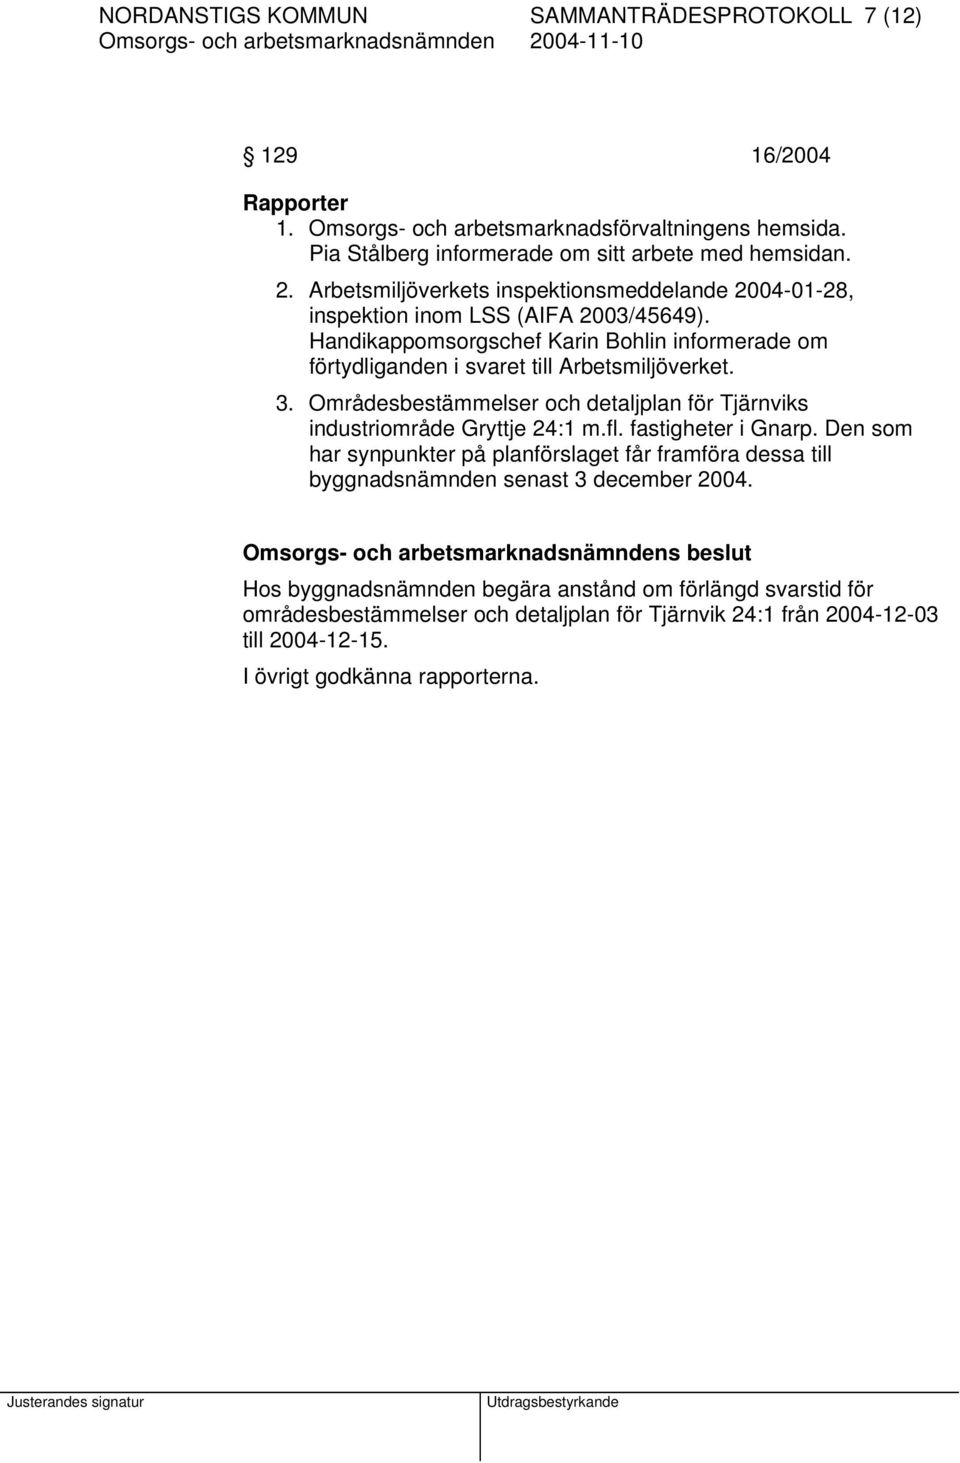 3. Områdesbestämmelser och detaljplan för Tjärnviks industriområde Gryttje 24:1 m.fl. fastigheter i Gnarp.